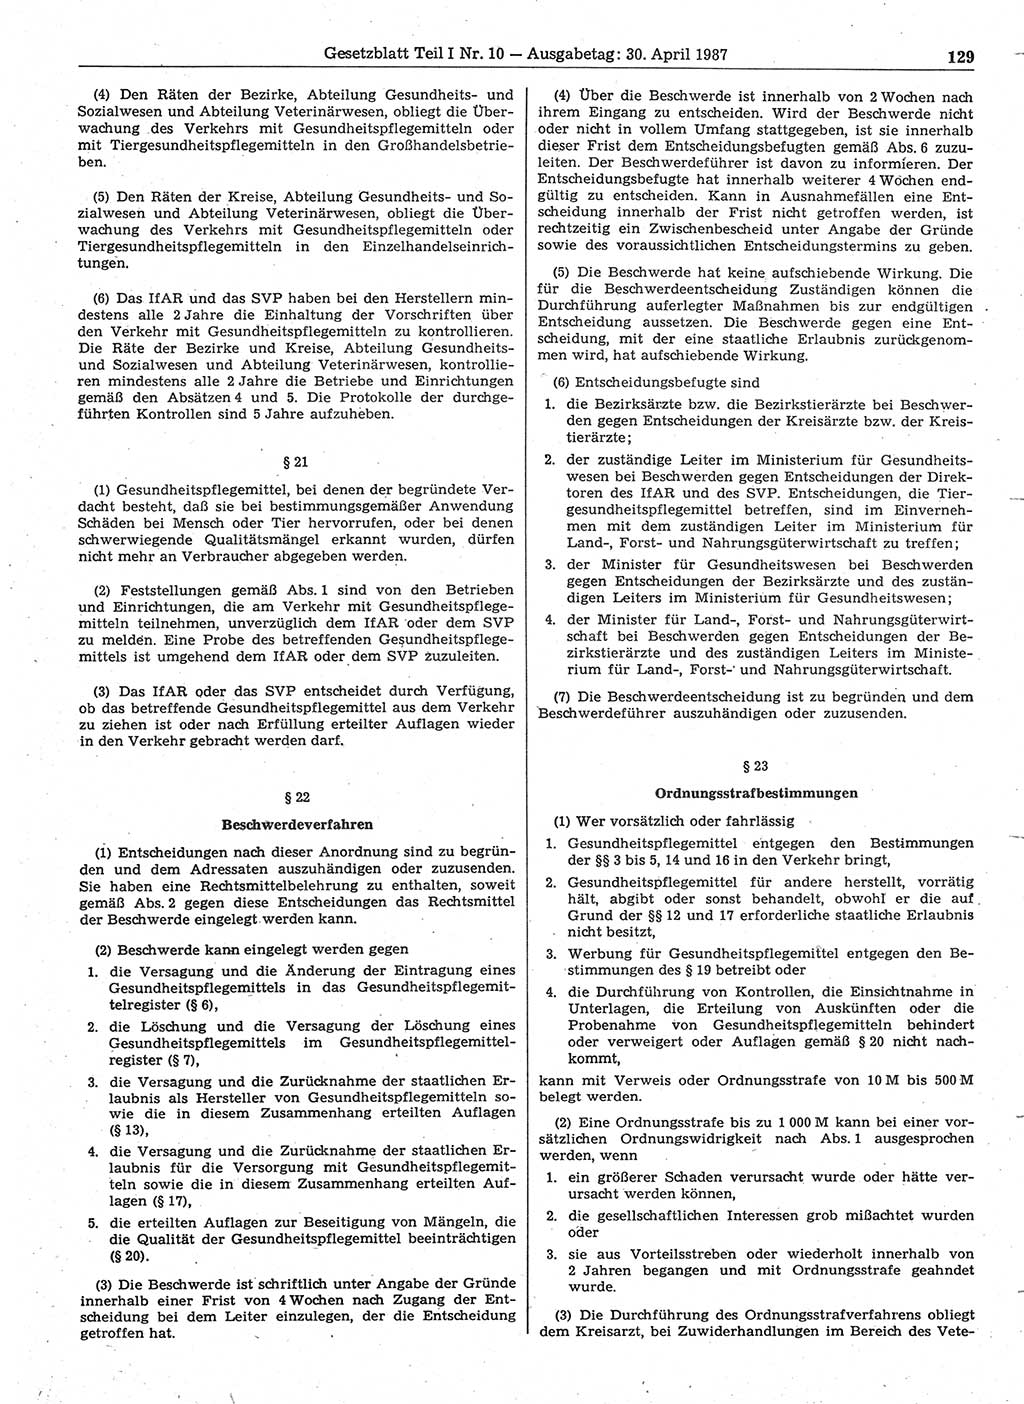 Gesetzblatt (GBl.) der Deutschen Demokratischen Republik (DDR) Teil Ⅰ 1987, Seite 129 (GBl. DDR Ⅰ 1987, S. 129)